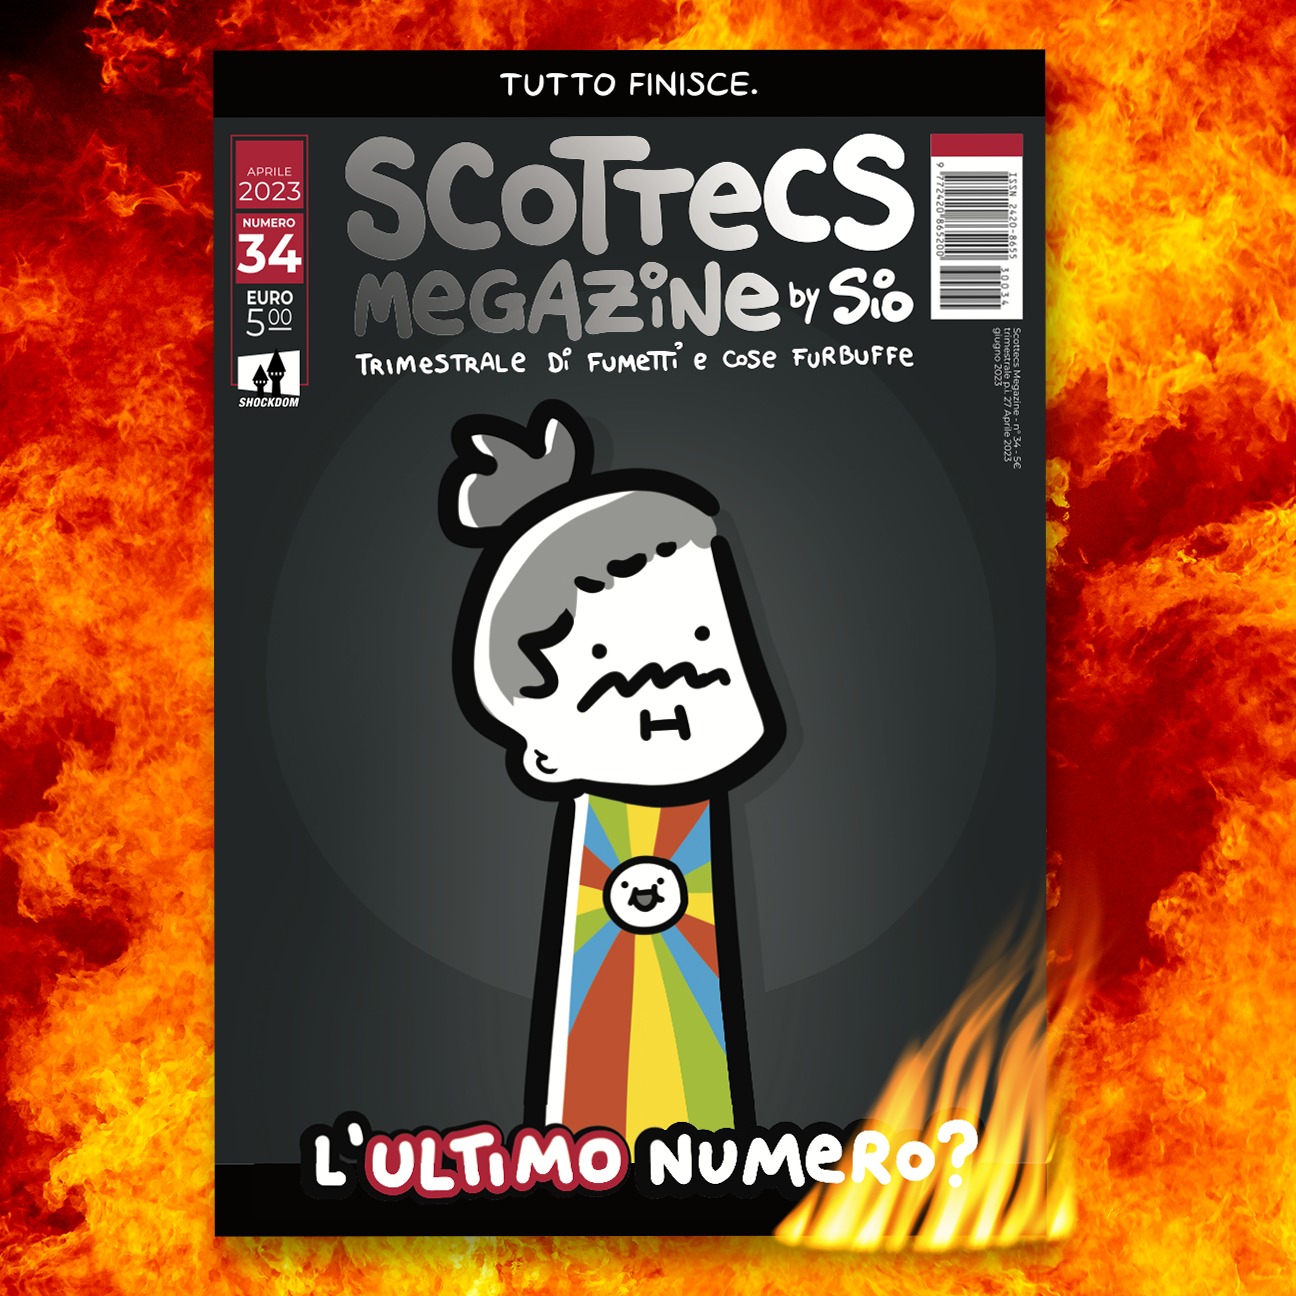 Scottecs Magazine- Sio ne annuncia la chiusura